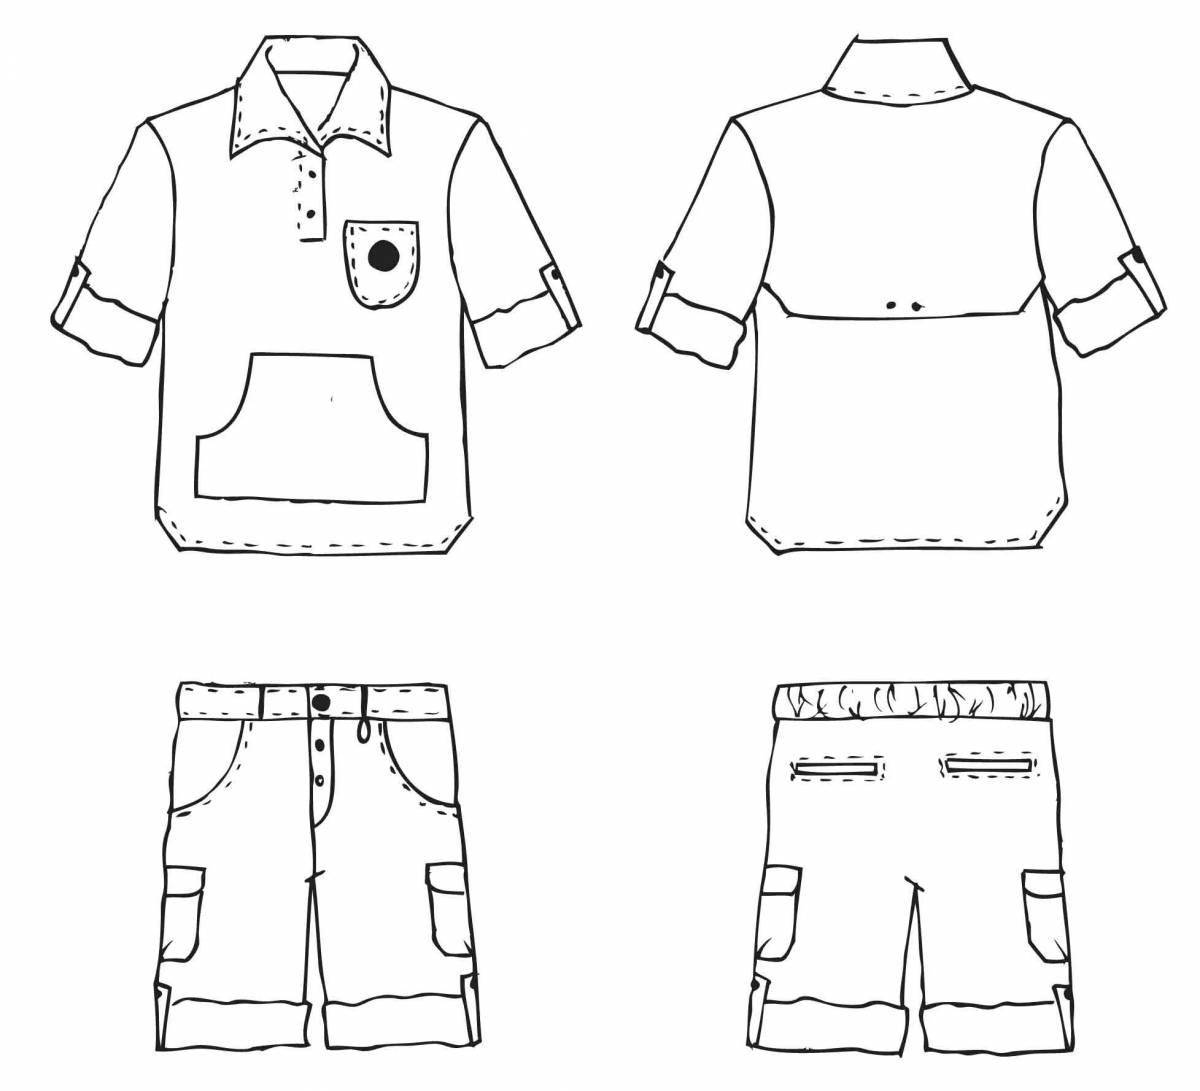 Stylish school uniform for boys